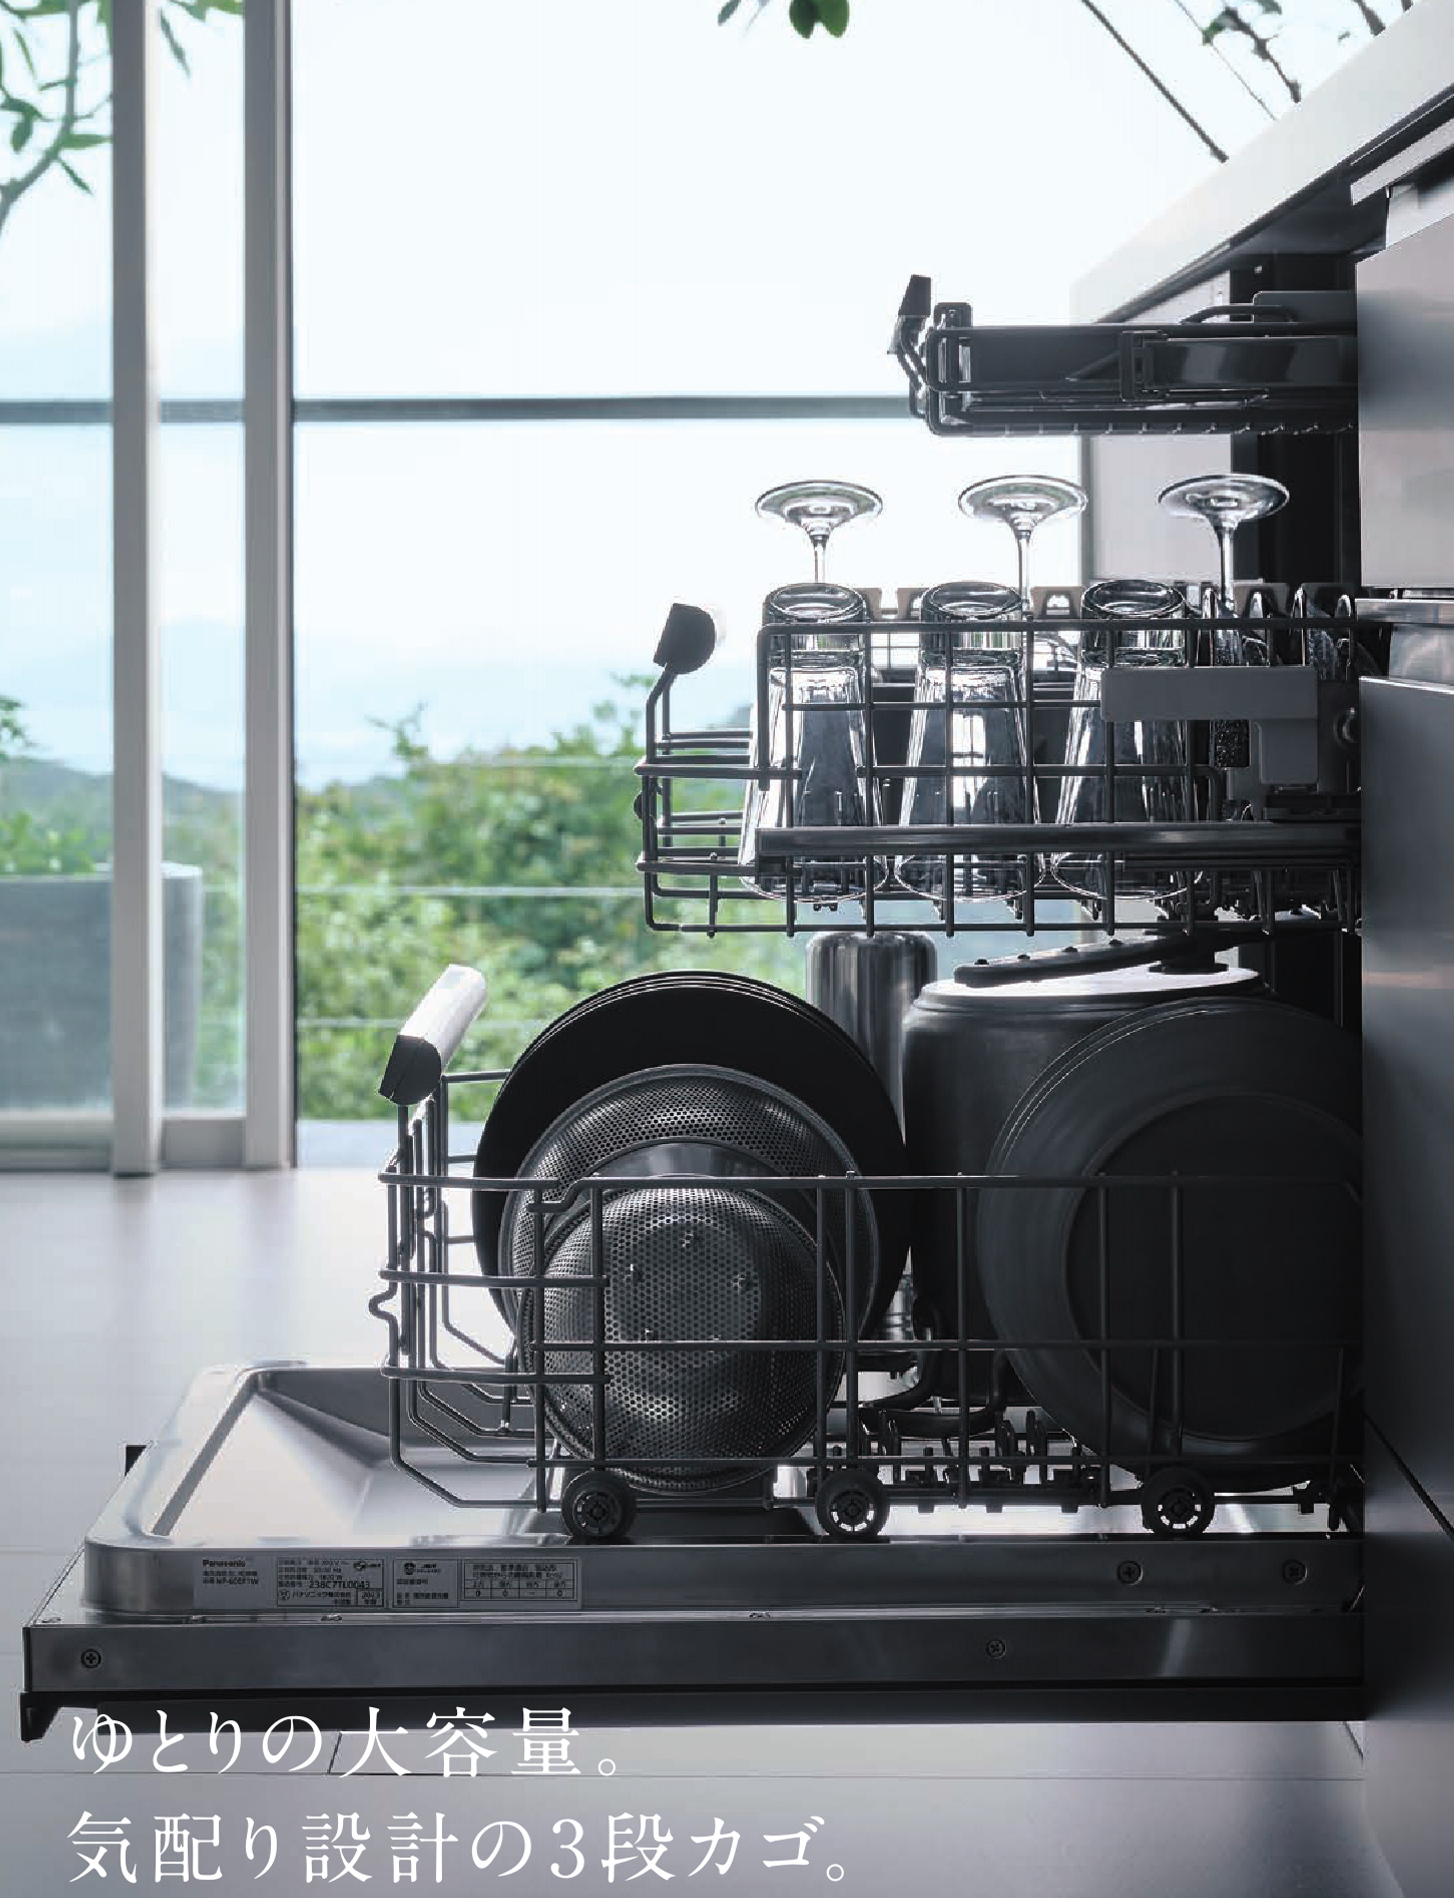 ヒーター乾燥機能がついた60センチ幅で大容量のパナソニックフロントオープン食洗機が魅力